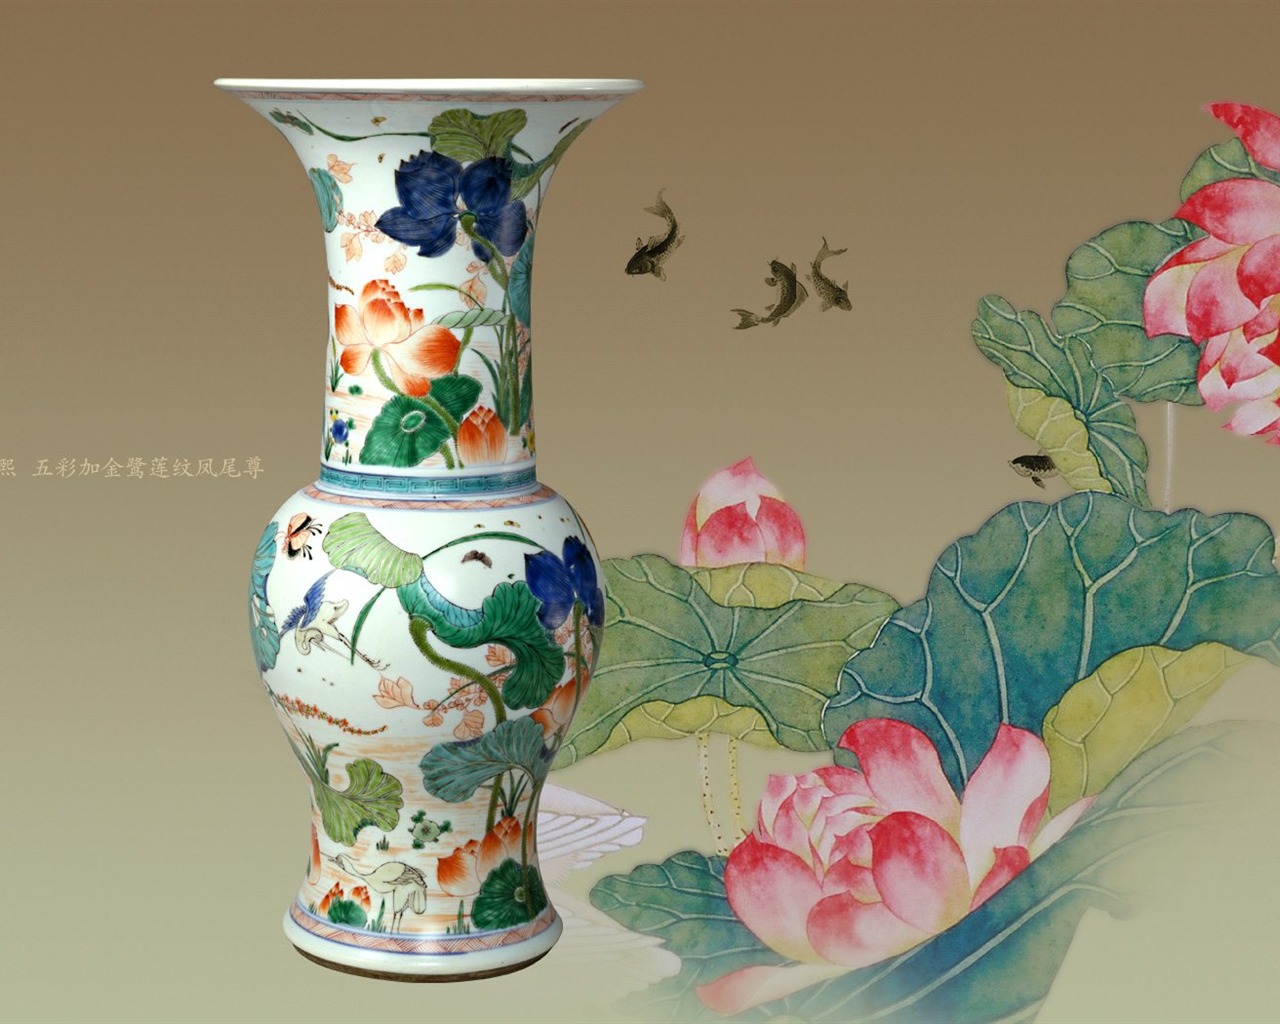 北京故宫博物院 文物展壁纸(二)5 - 1280x1024